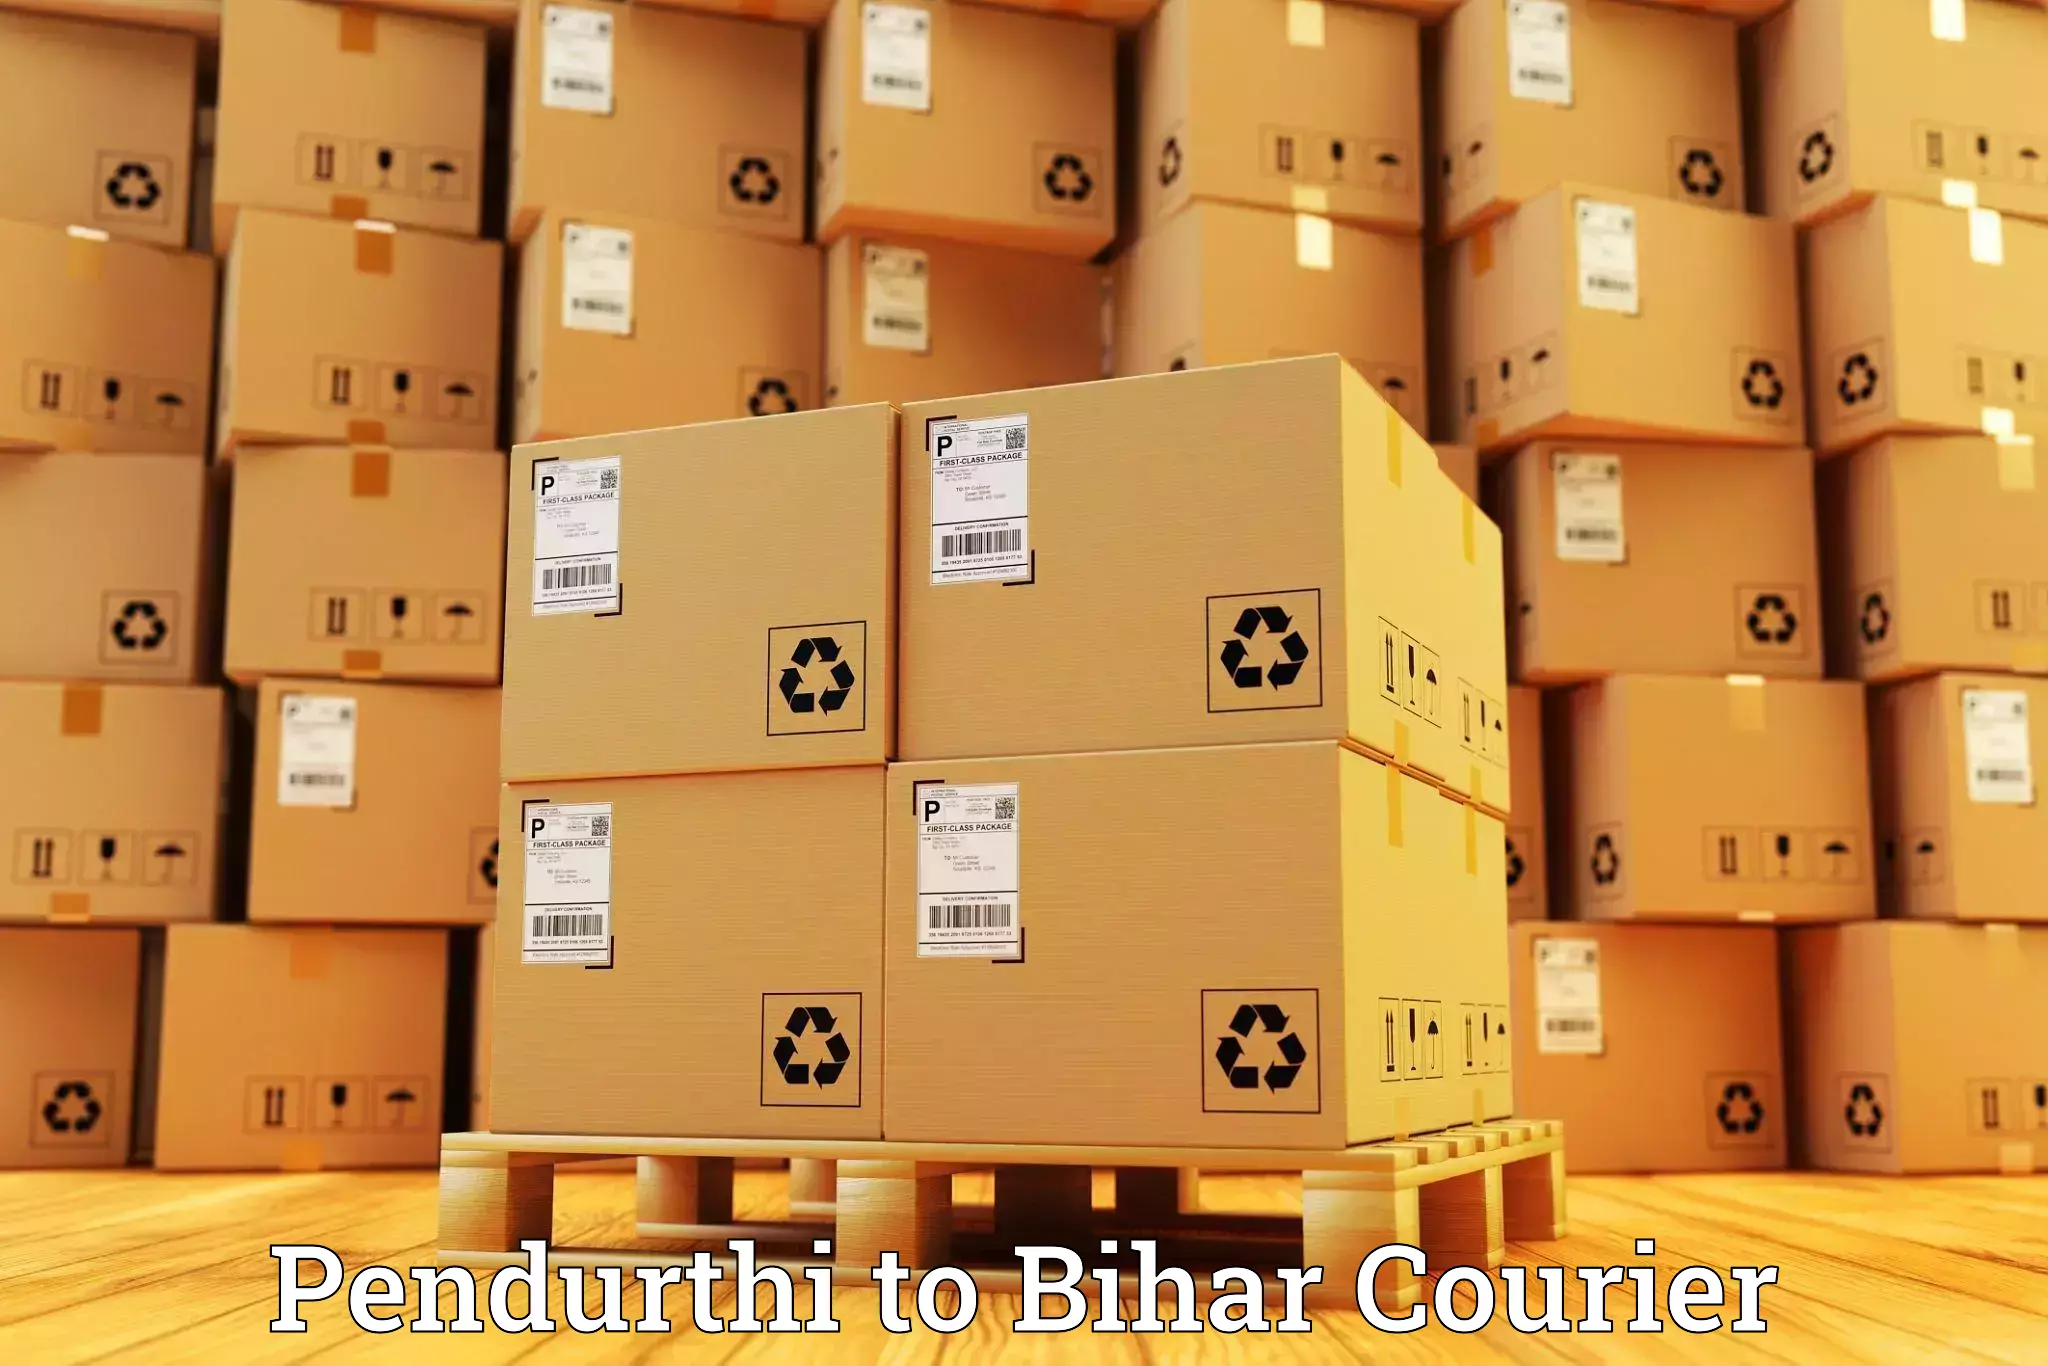 International parcel service Pendurthi to Dighwara